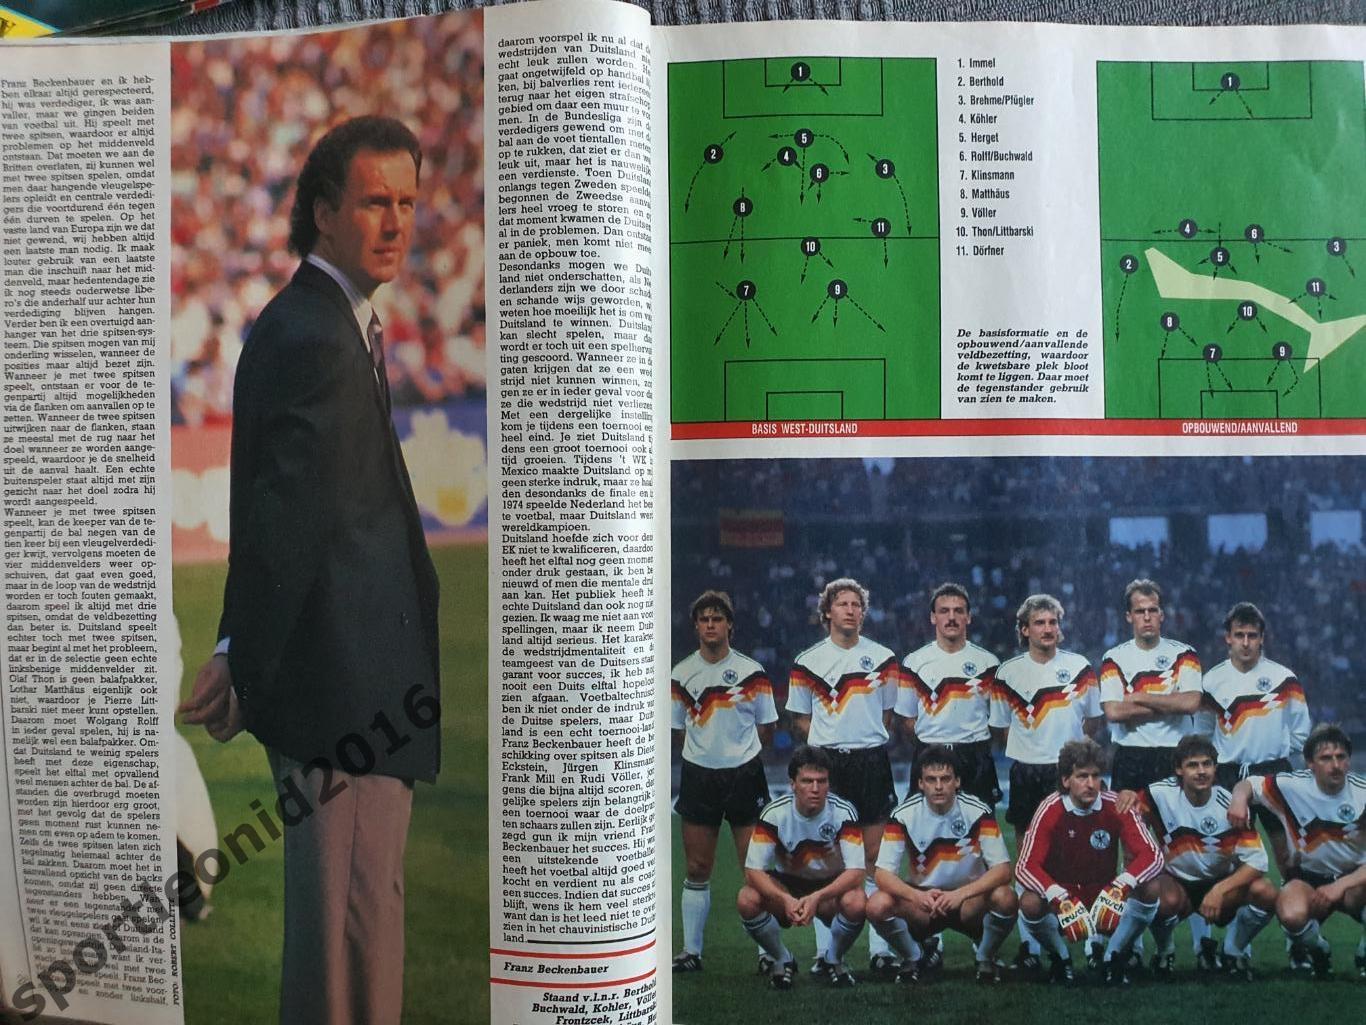 Voetbal International 1988.Годовая подписка.52 номера +4 спецвыпуска к Евро-88.6 3